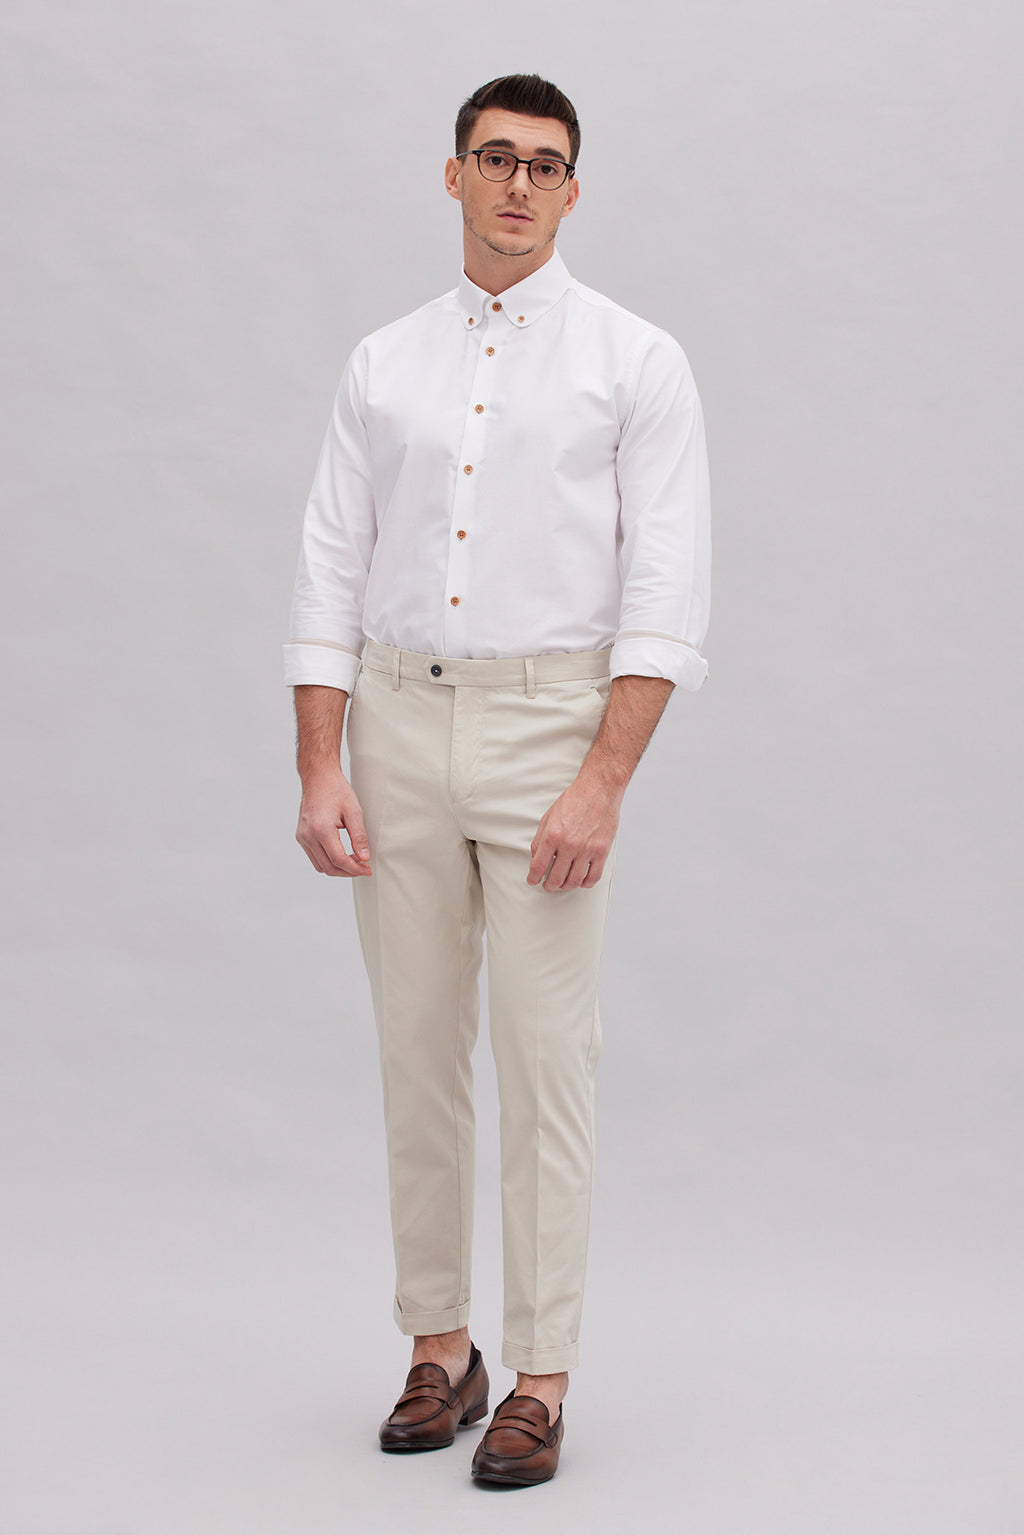 Modern Fit White Shirt - Benjamin's Menswear